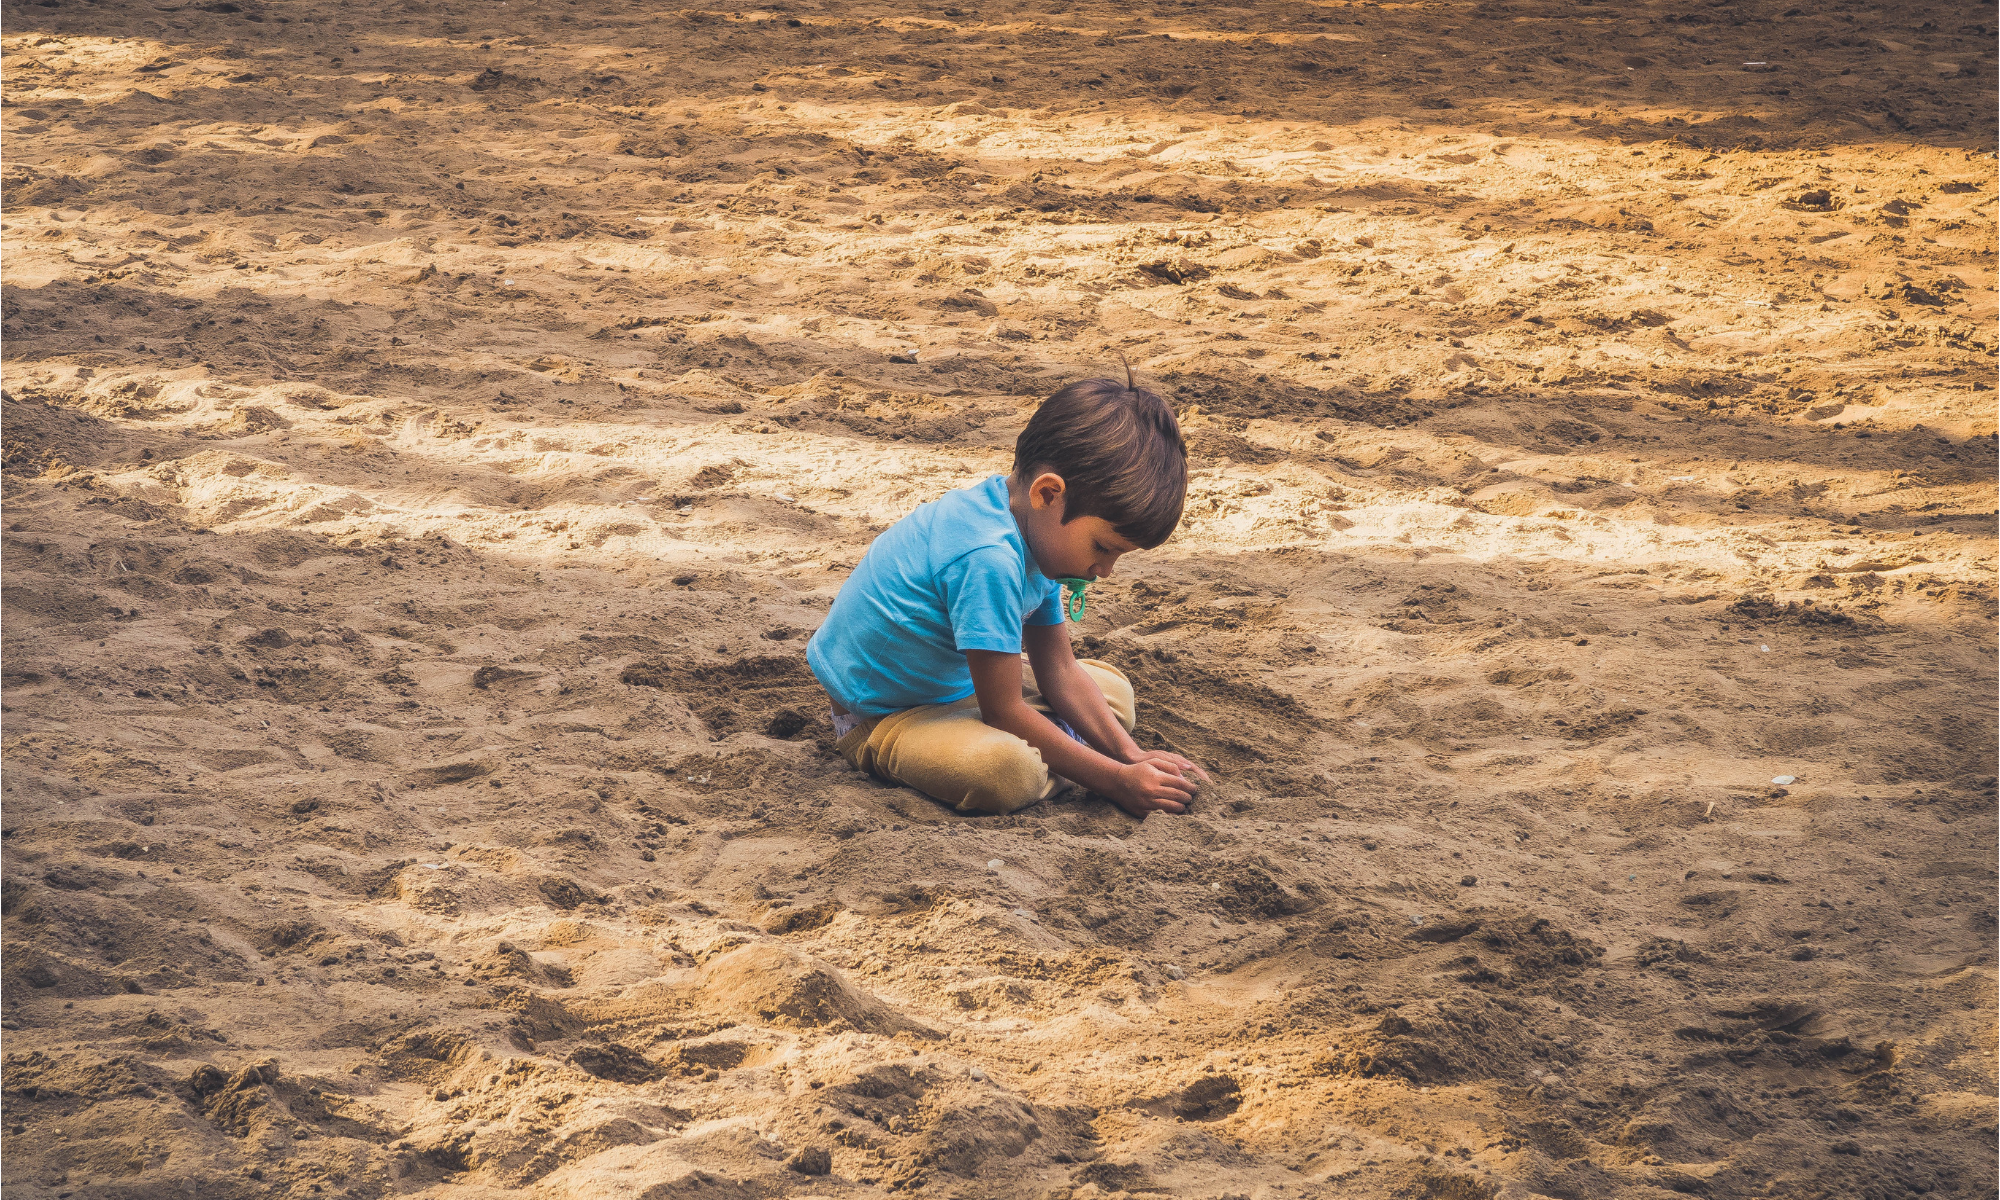 Kind Alleen in het zand